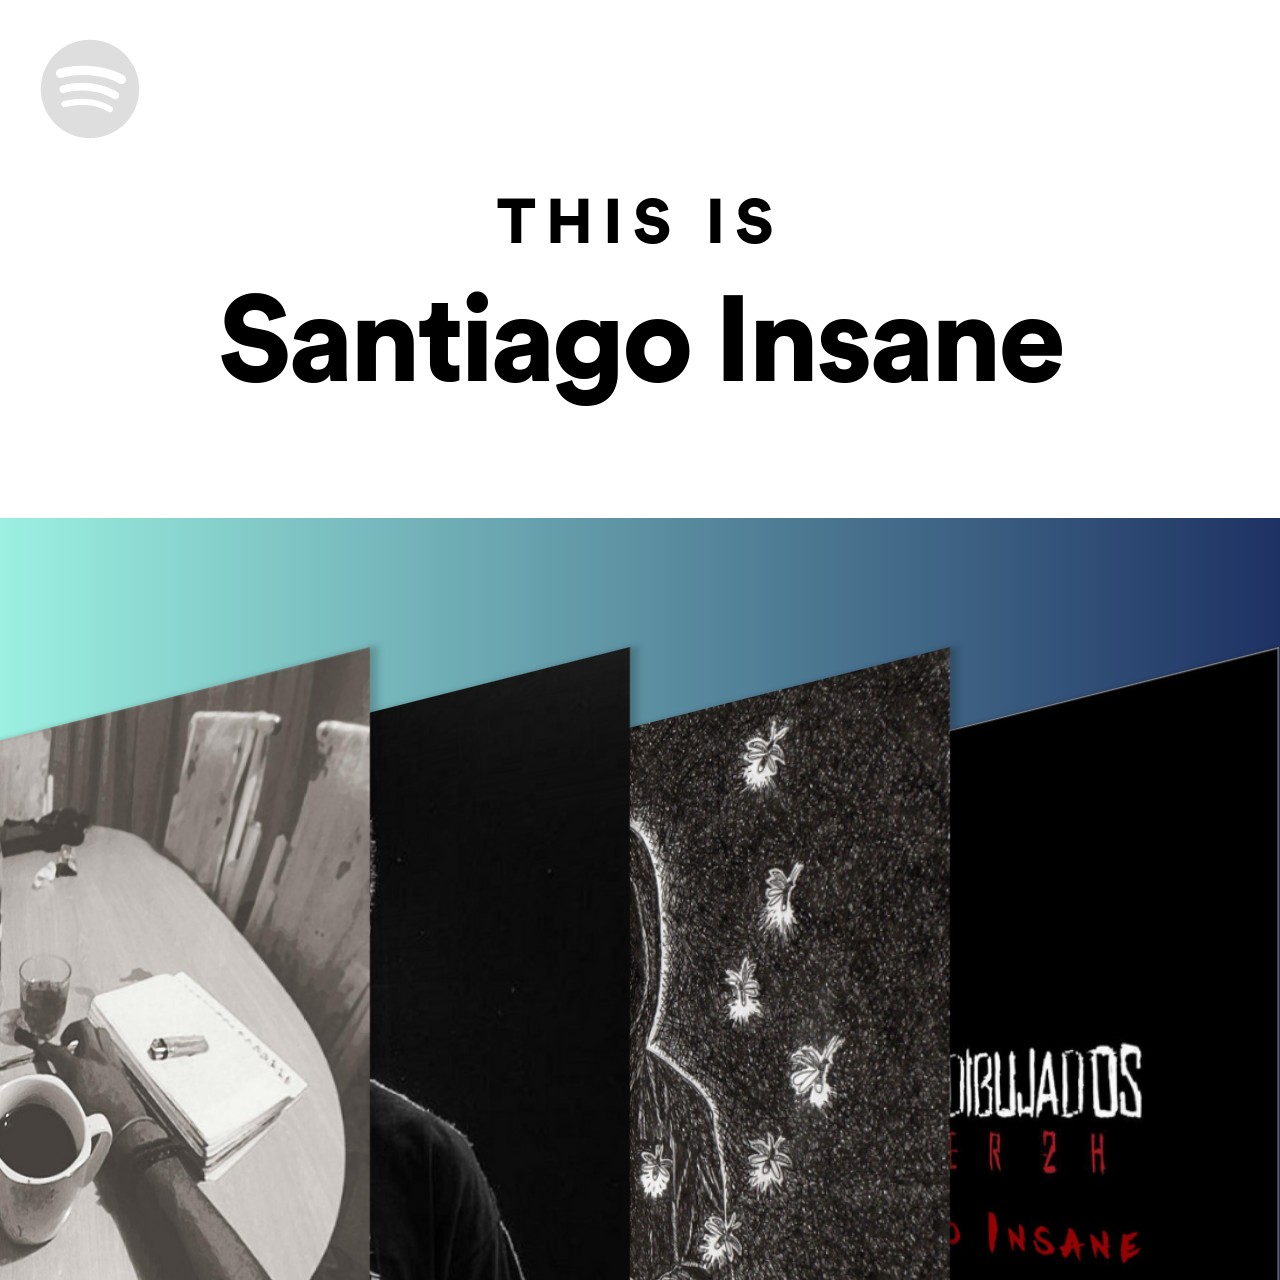 This Is Santiago Insane